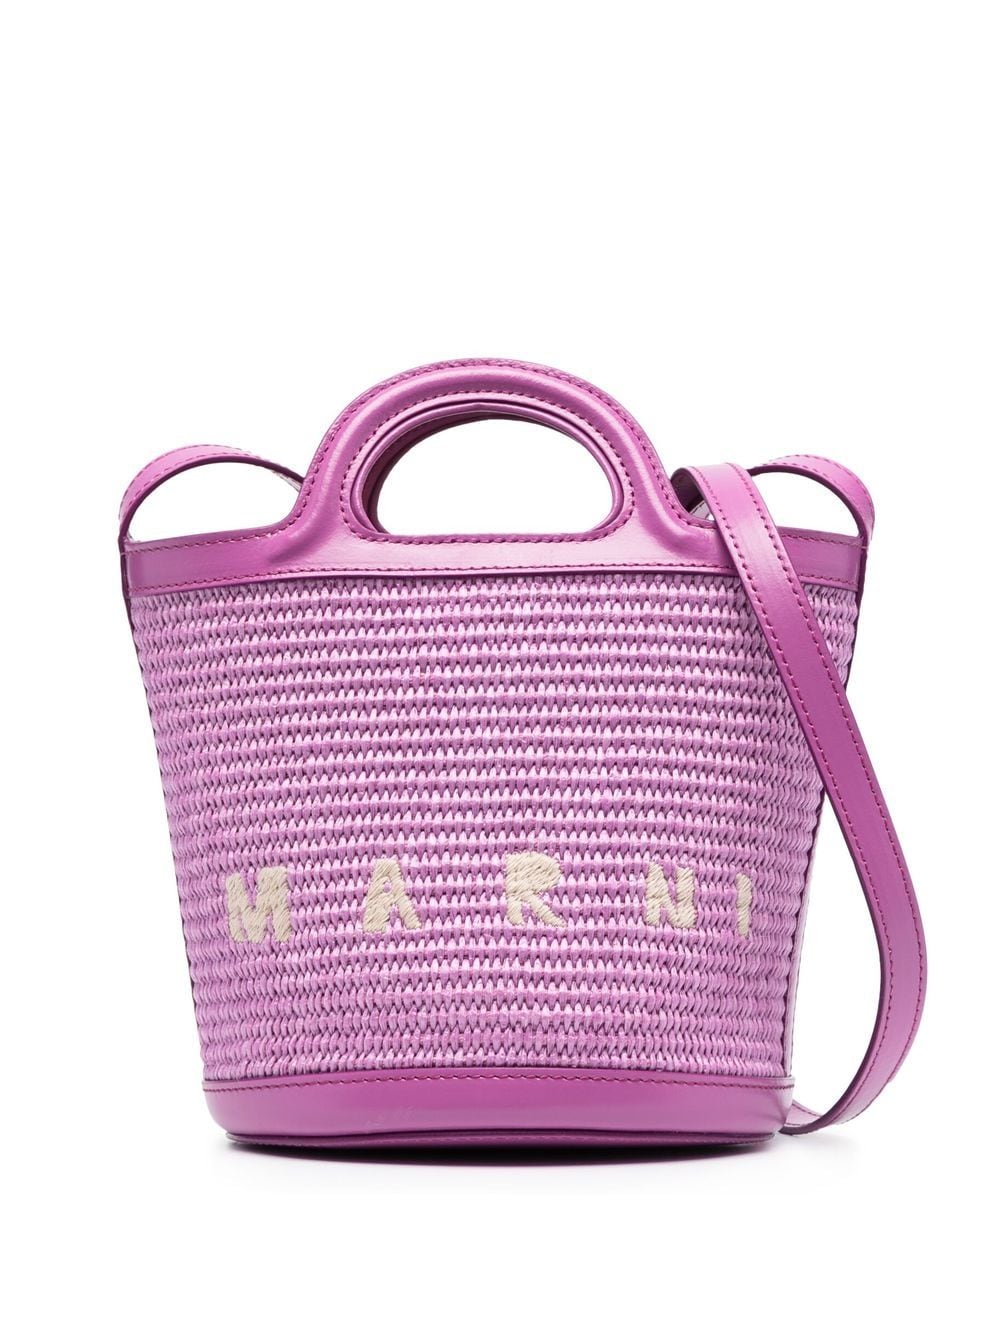 Lilac mini Secchiello bucket bag